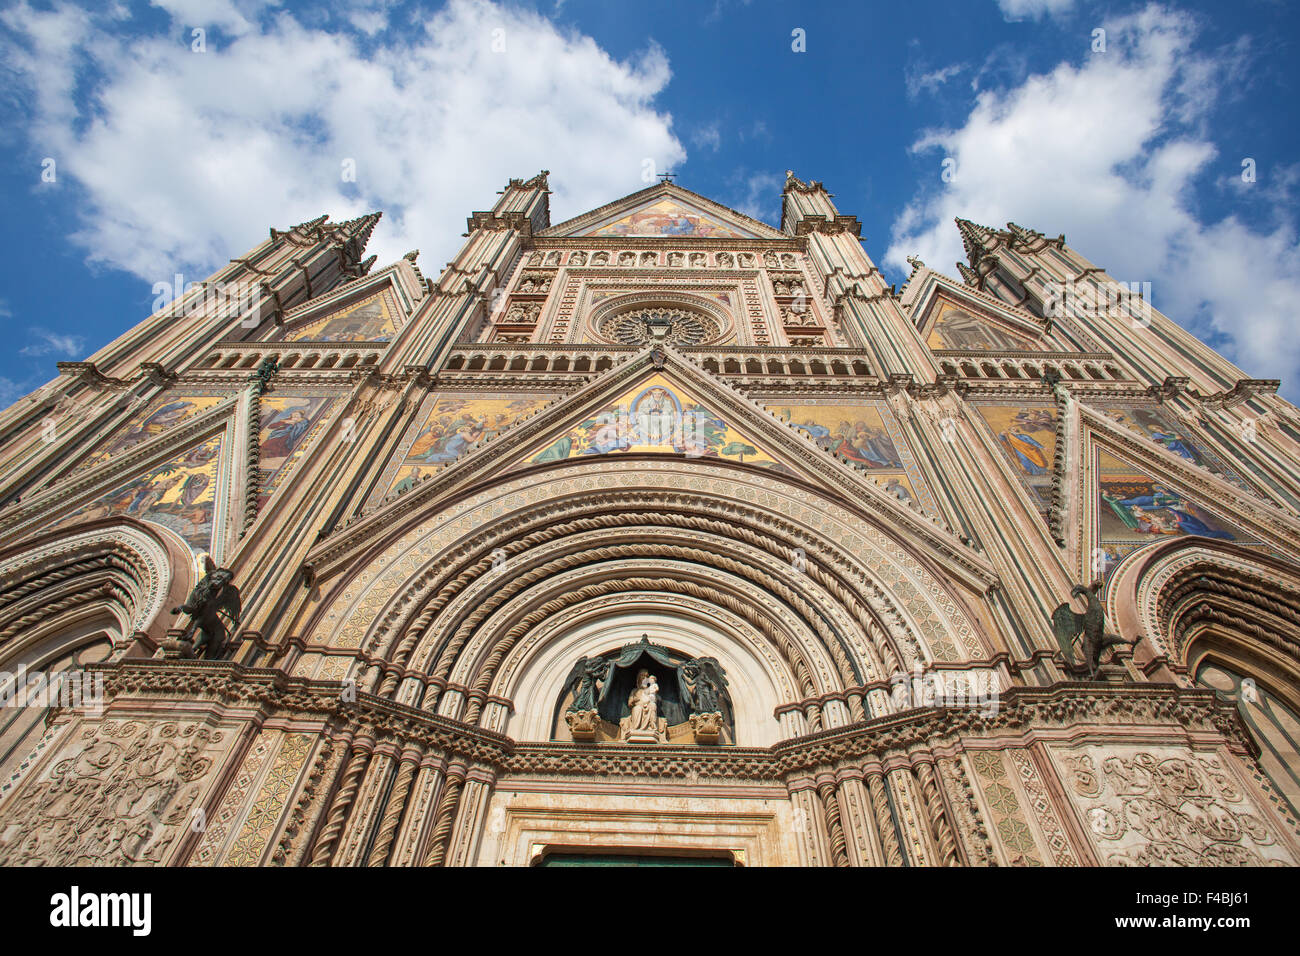 La Cathédrale d'Orvieto est un grand 14e siècle cathédrale catholique romaine situé dans la ville d'Orvieto en Italie centrale. Banque D'Images